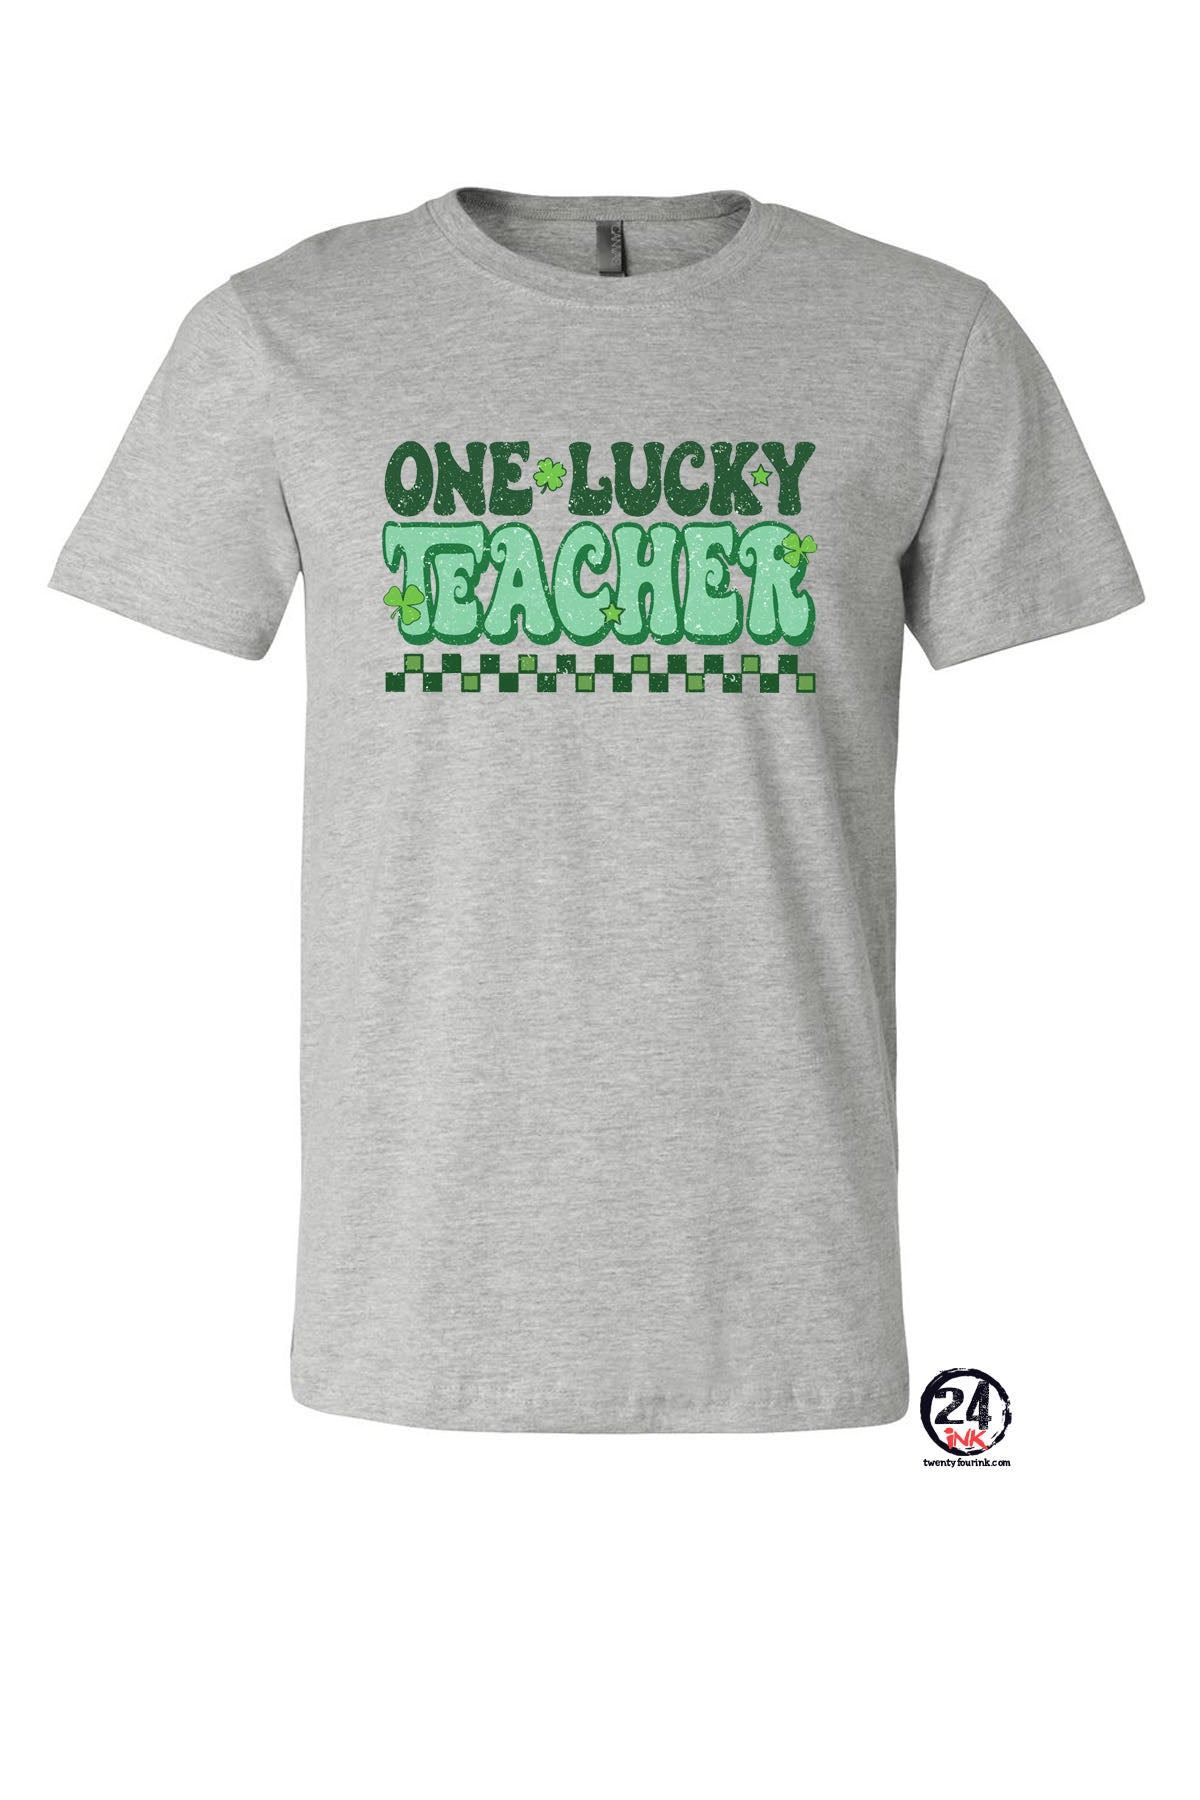 One Lucky Teacher St Patrick's day T-Shirt